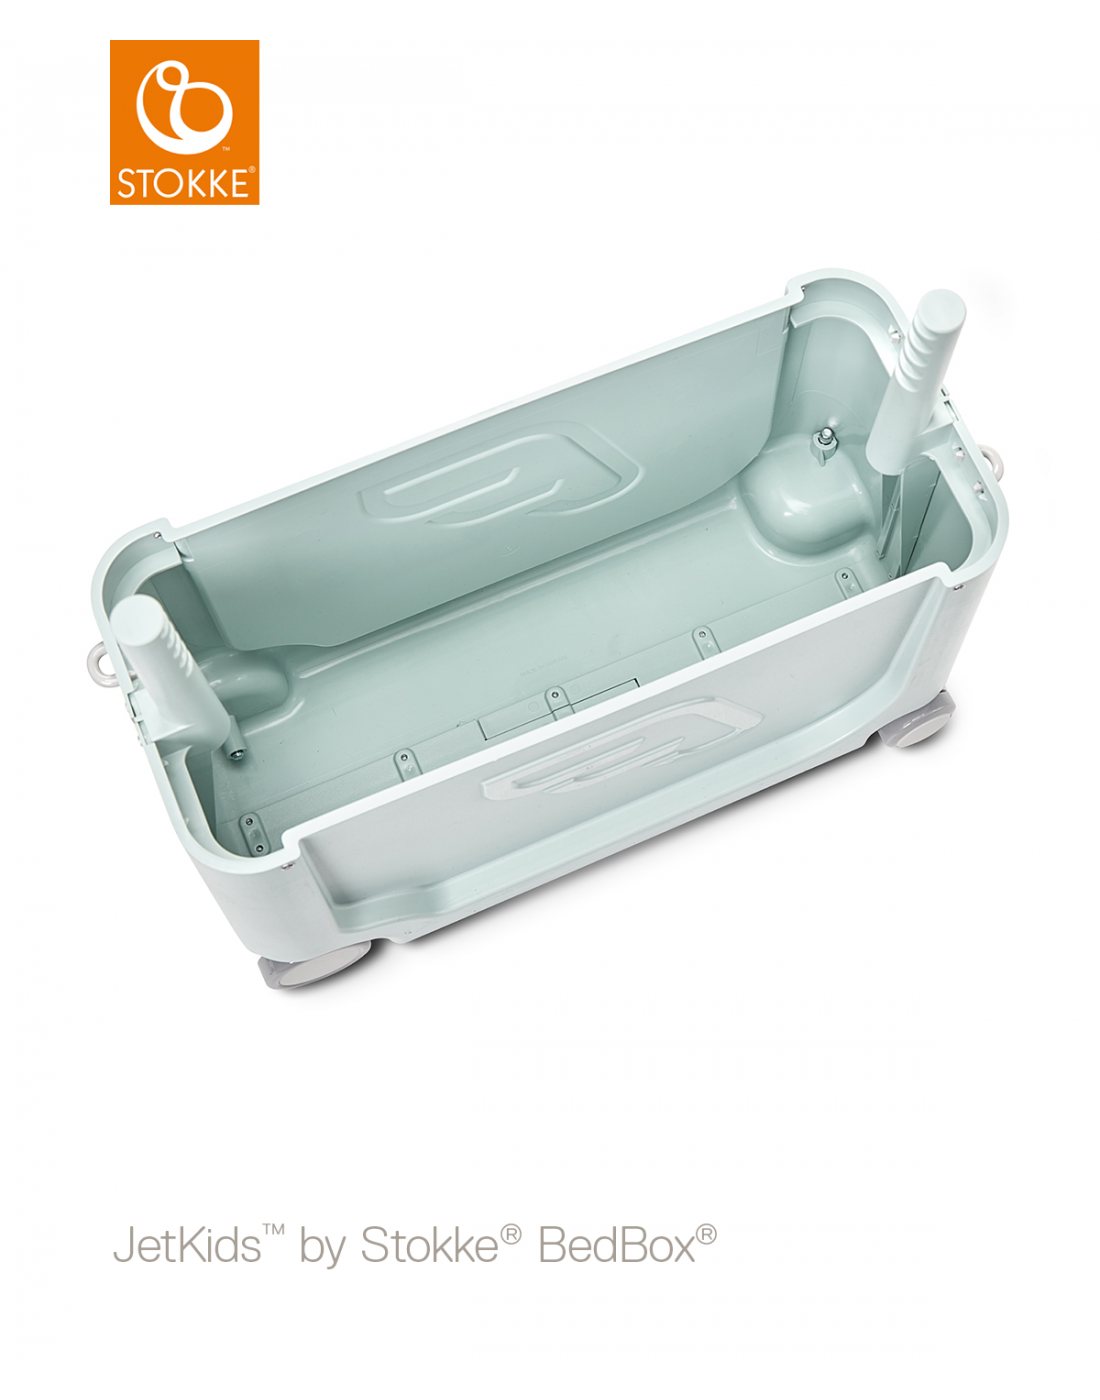 Βρεφική Bαλίτσα-Κρεβατάκι Ταξιδίου JetKids™ by Stokke® BedBox 2.0 Green Aurora